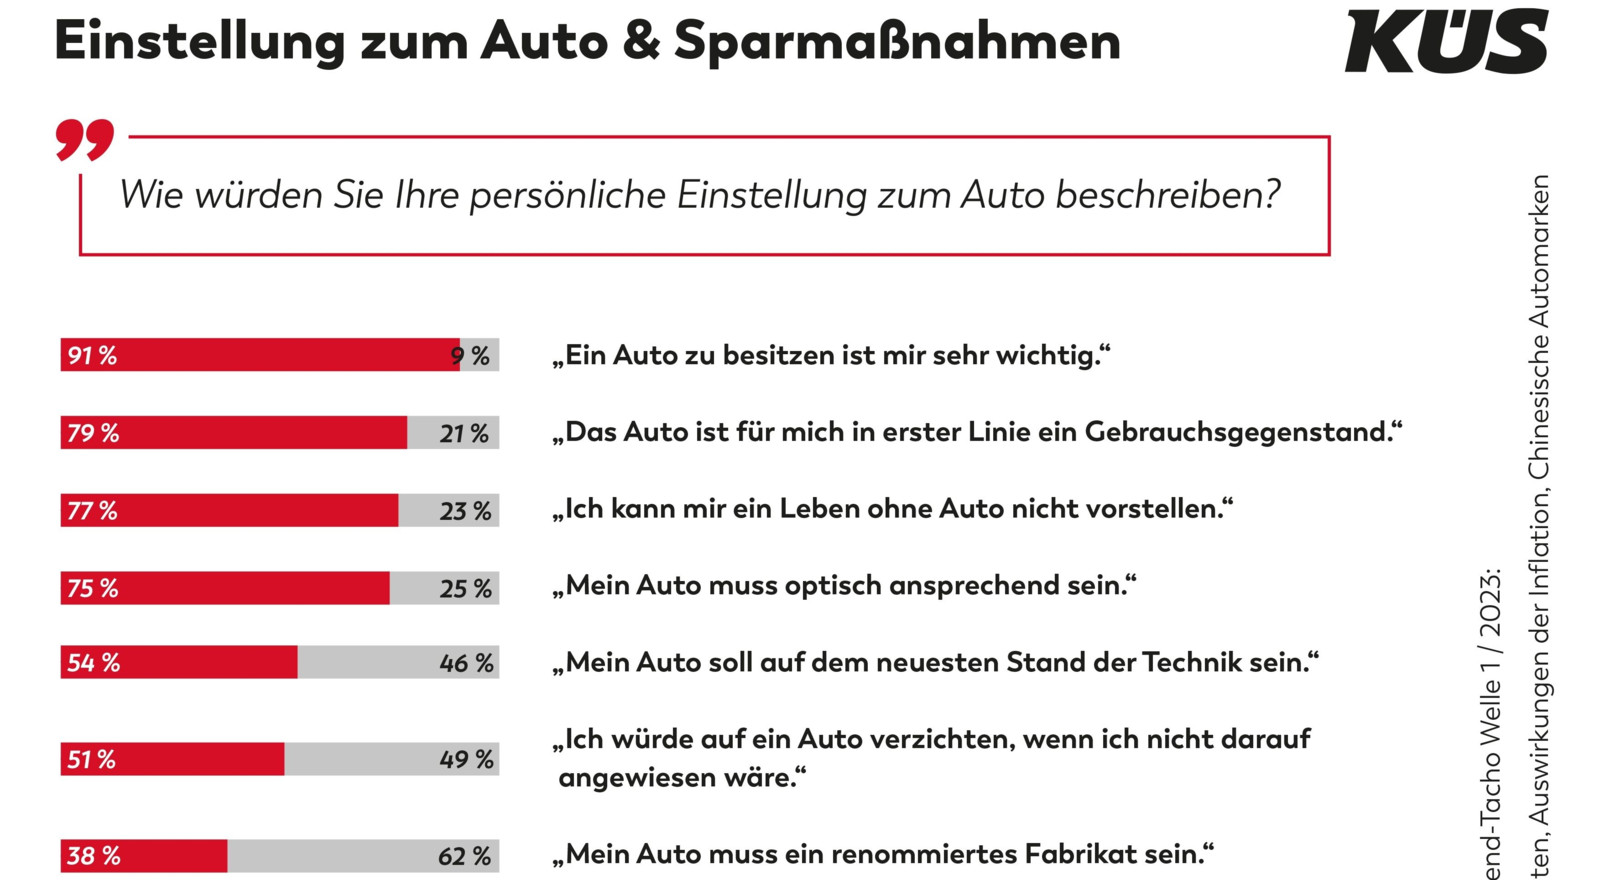 Auch in Krisenzeiten hat das Auto in Deutschland einen hohen Stellenwert.